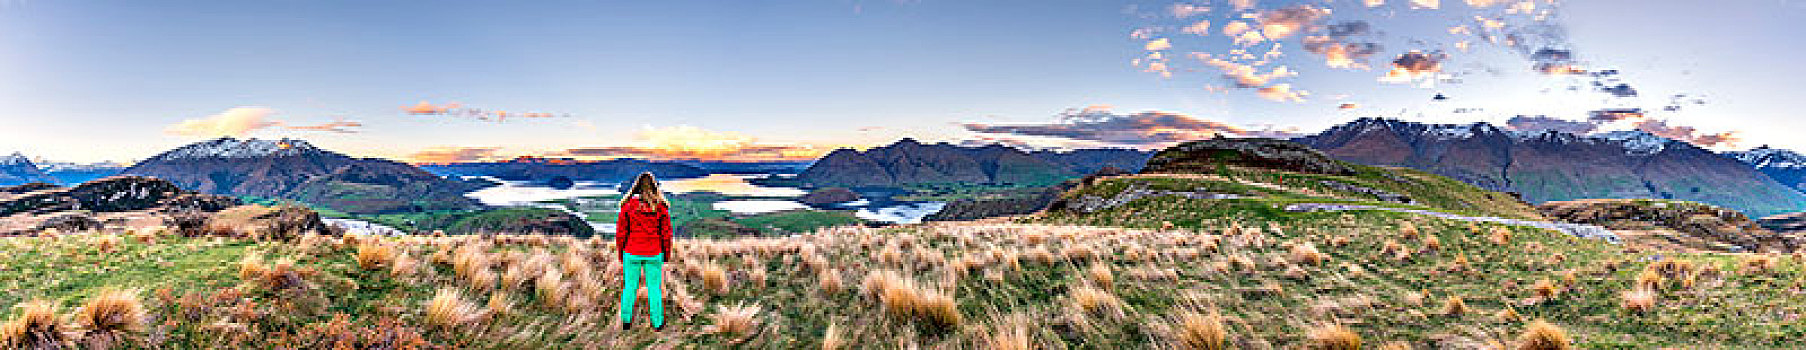 远足,远眺,瓦纳卡湖,山,岩石,顶峰,湾,奥塔哥,南部地区,新西兰,大洋洲